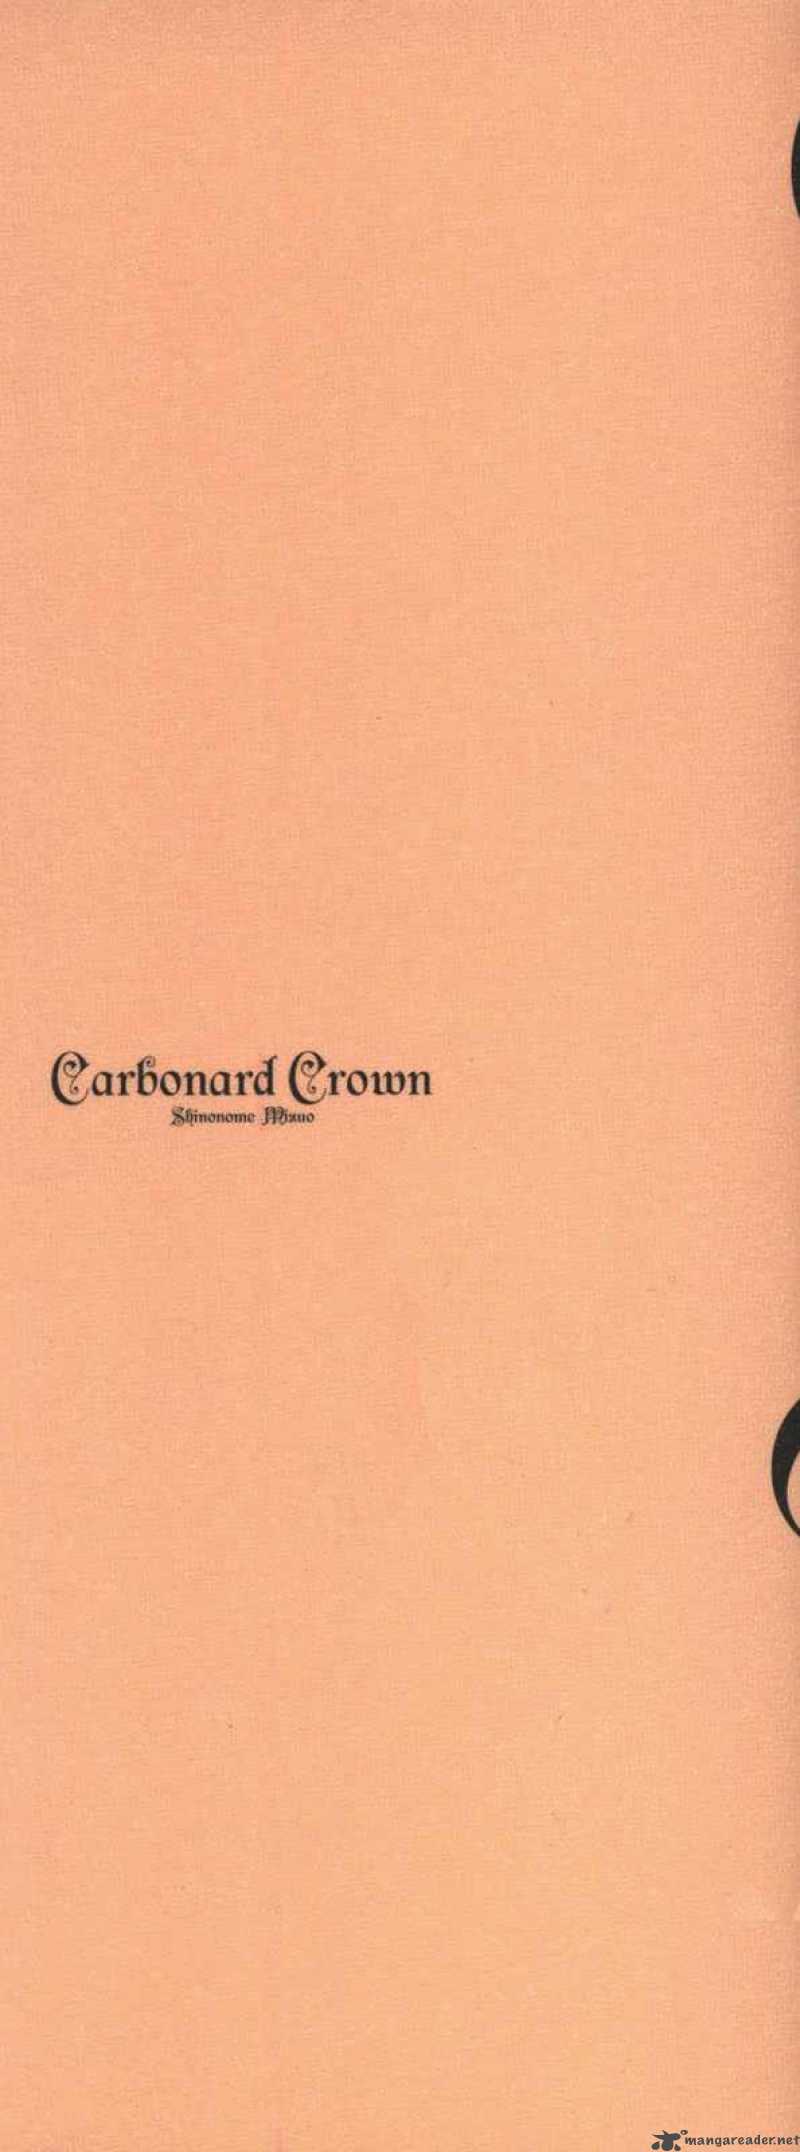 Carbonard Crown 1 3